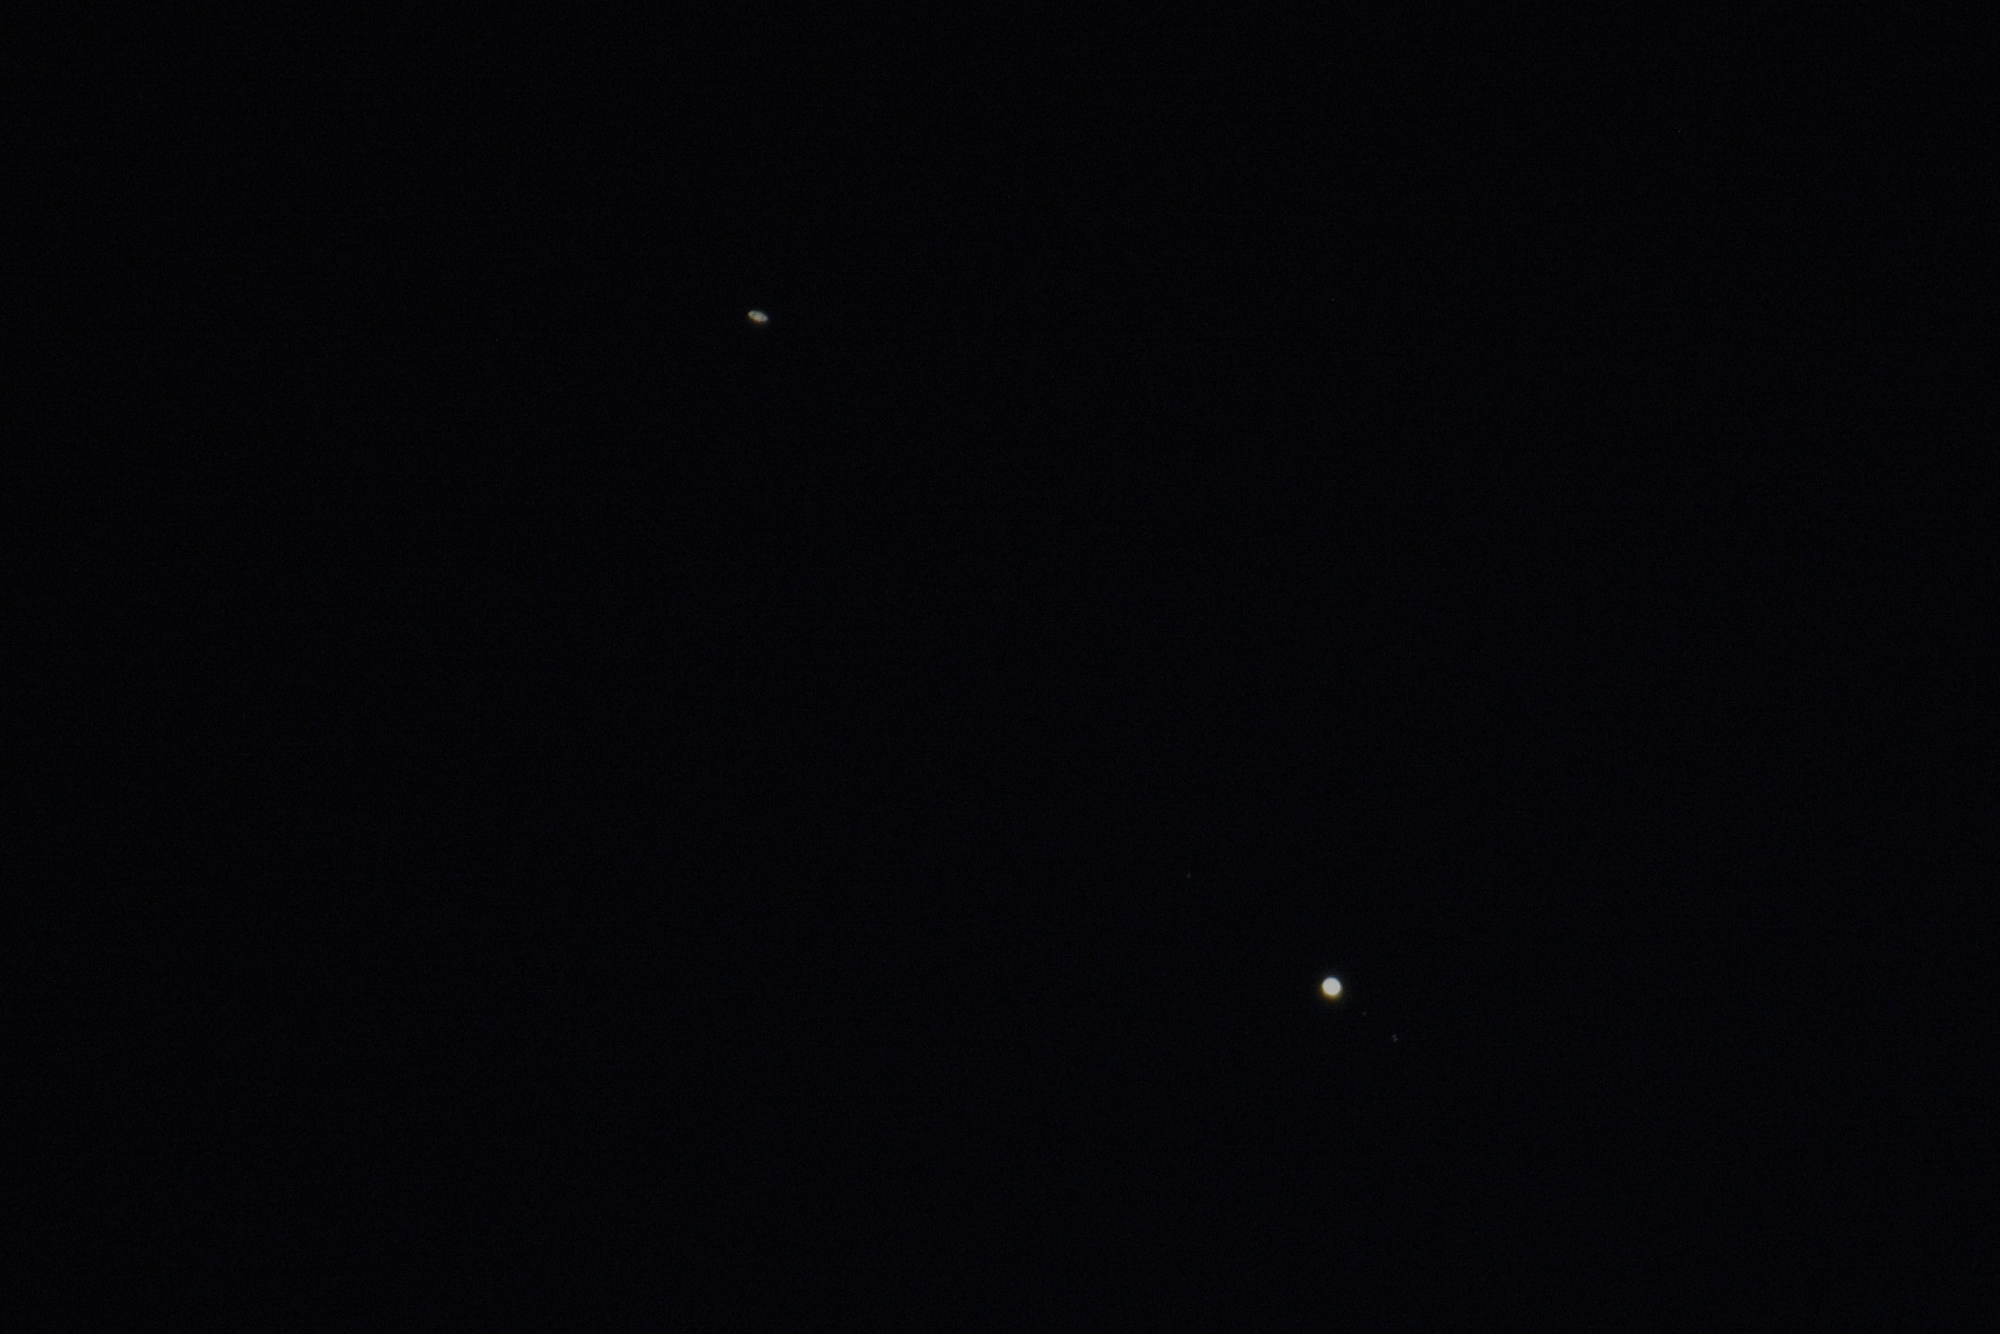 2020_12_17 Jupiter & Saturne_Zoom+DX 200-500.jpg